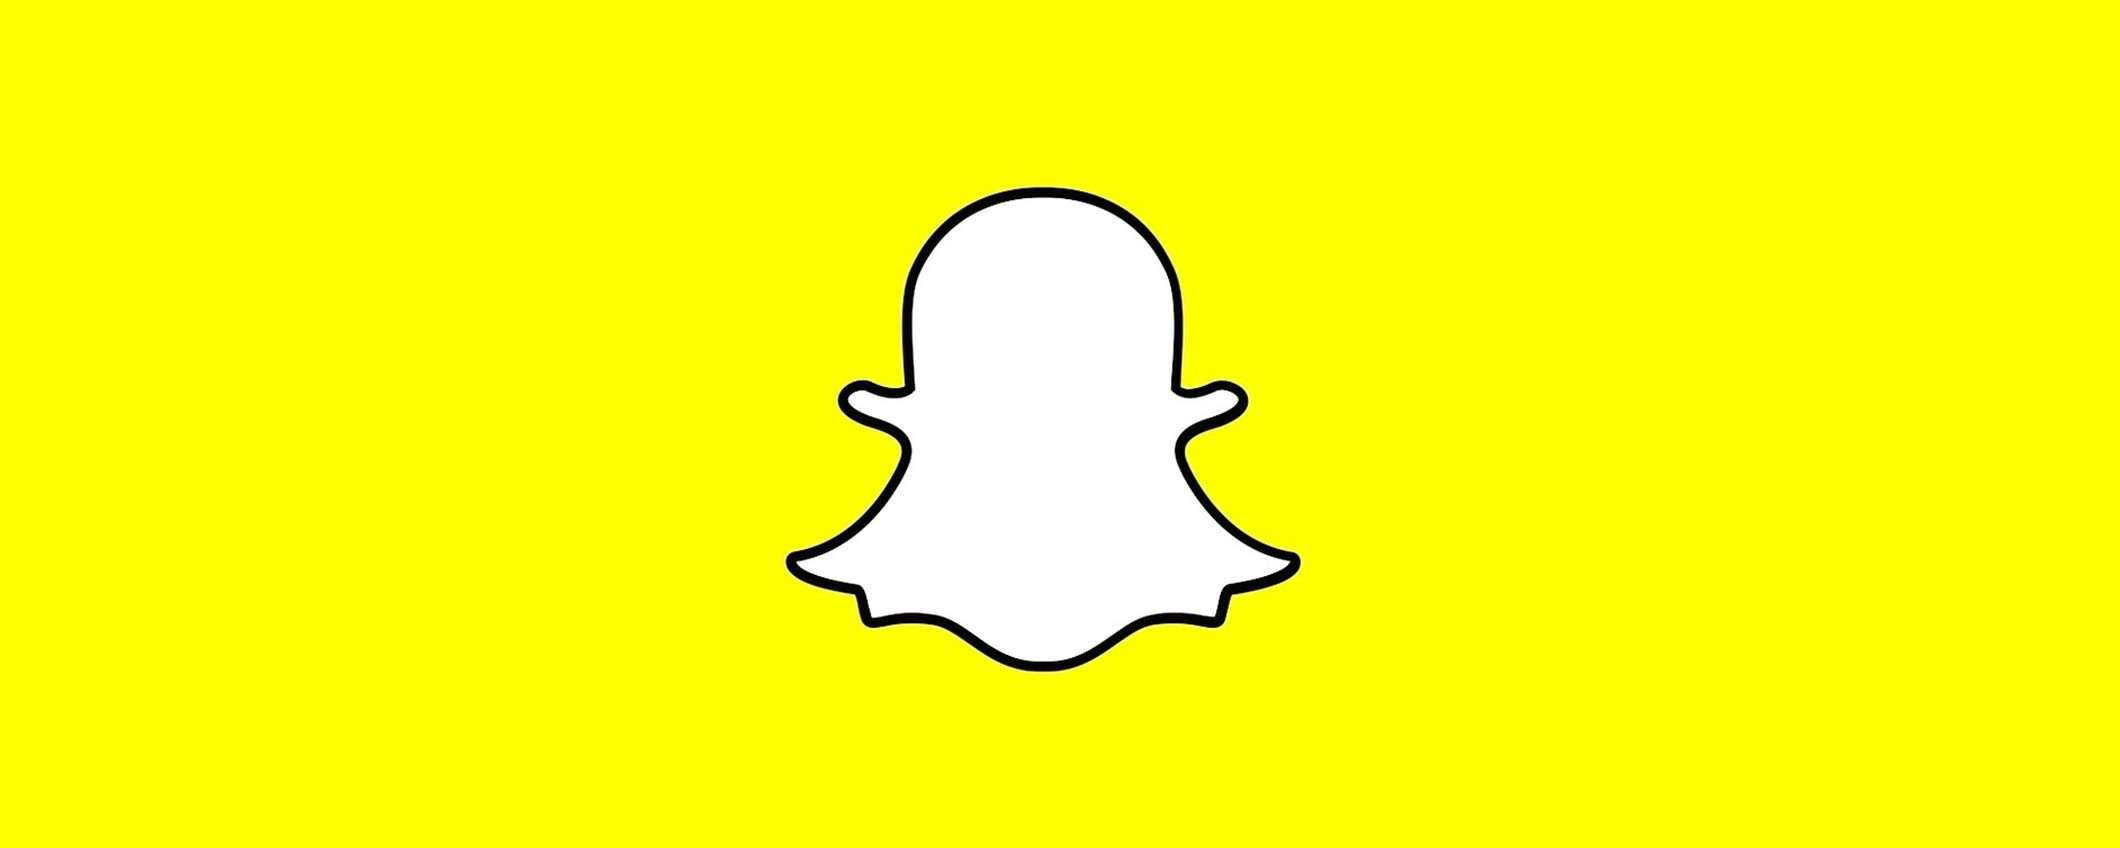 AI di Snapchat+ permette di generare e ingrandire le immagini